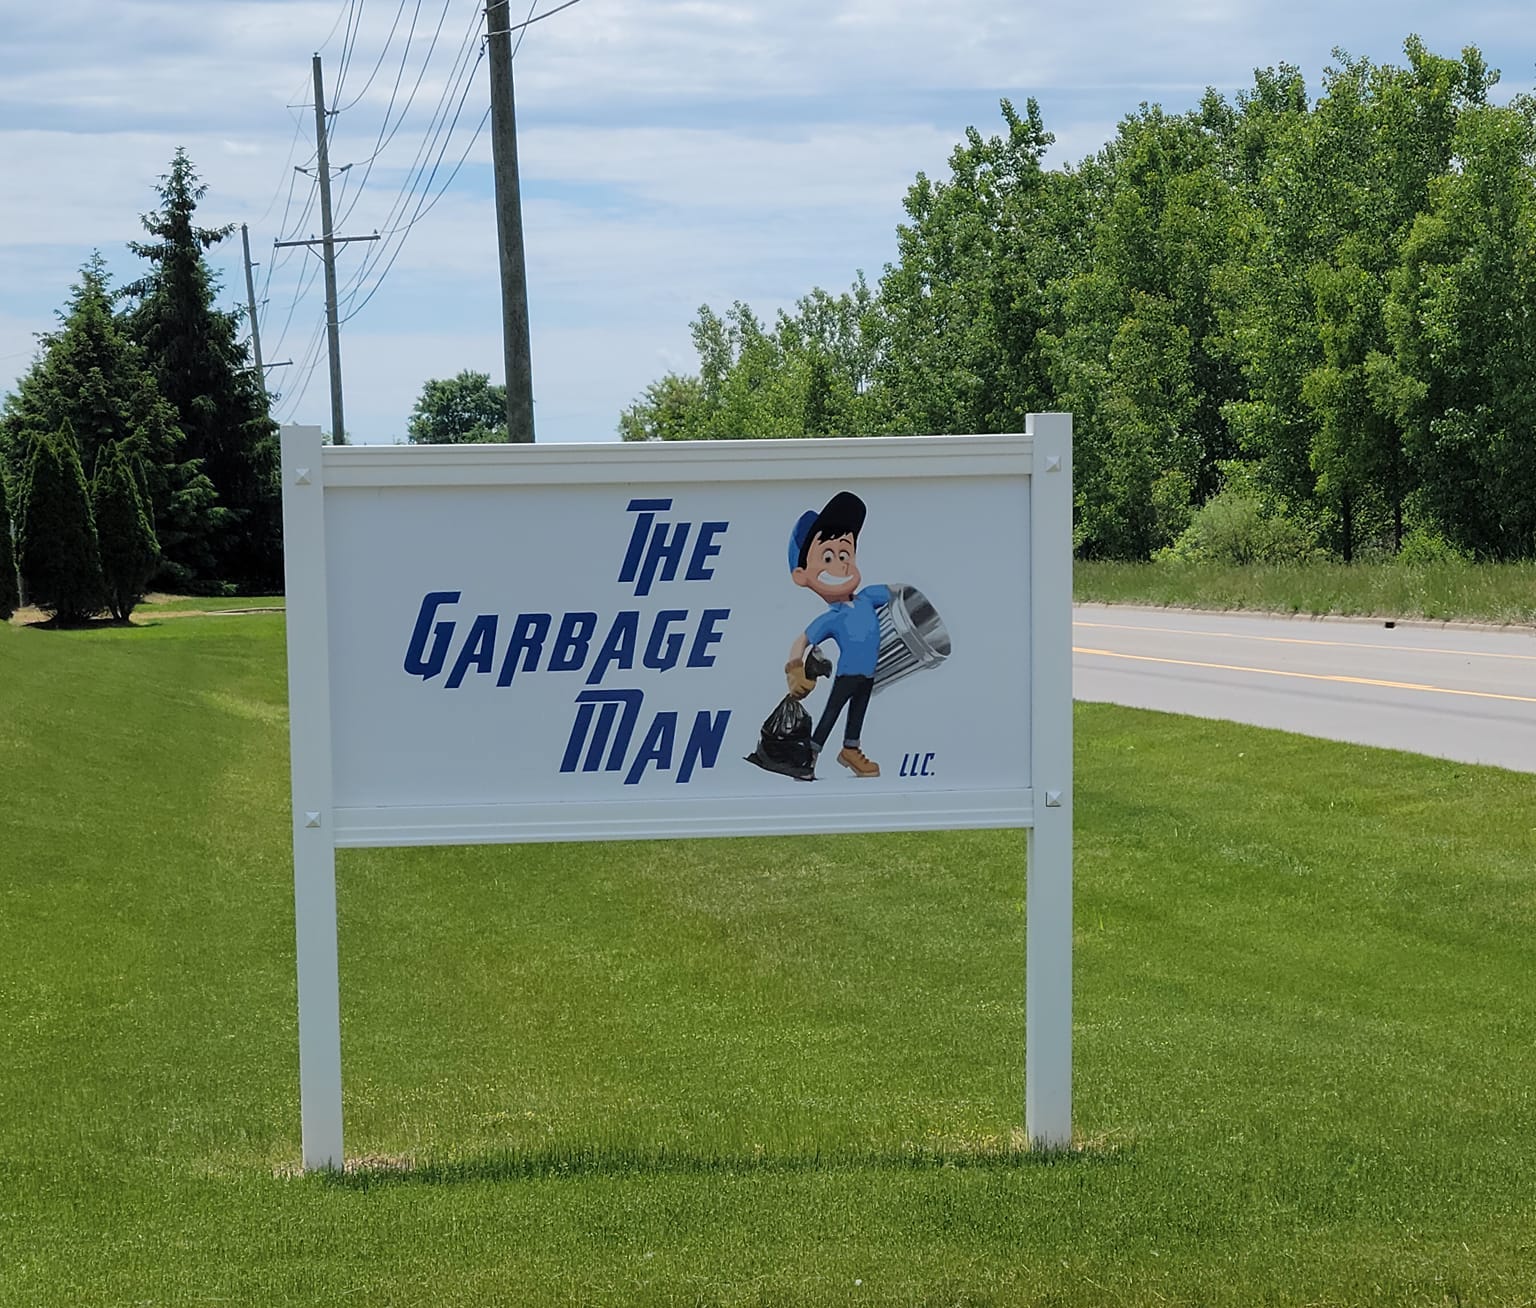 The Garbage Man sign